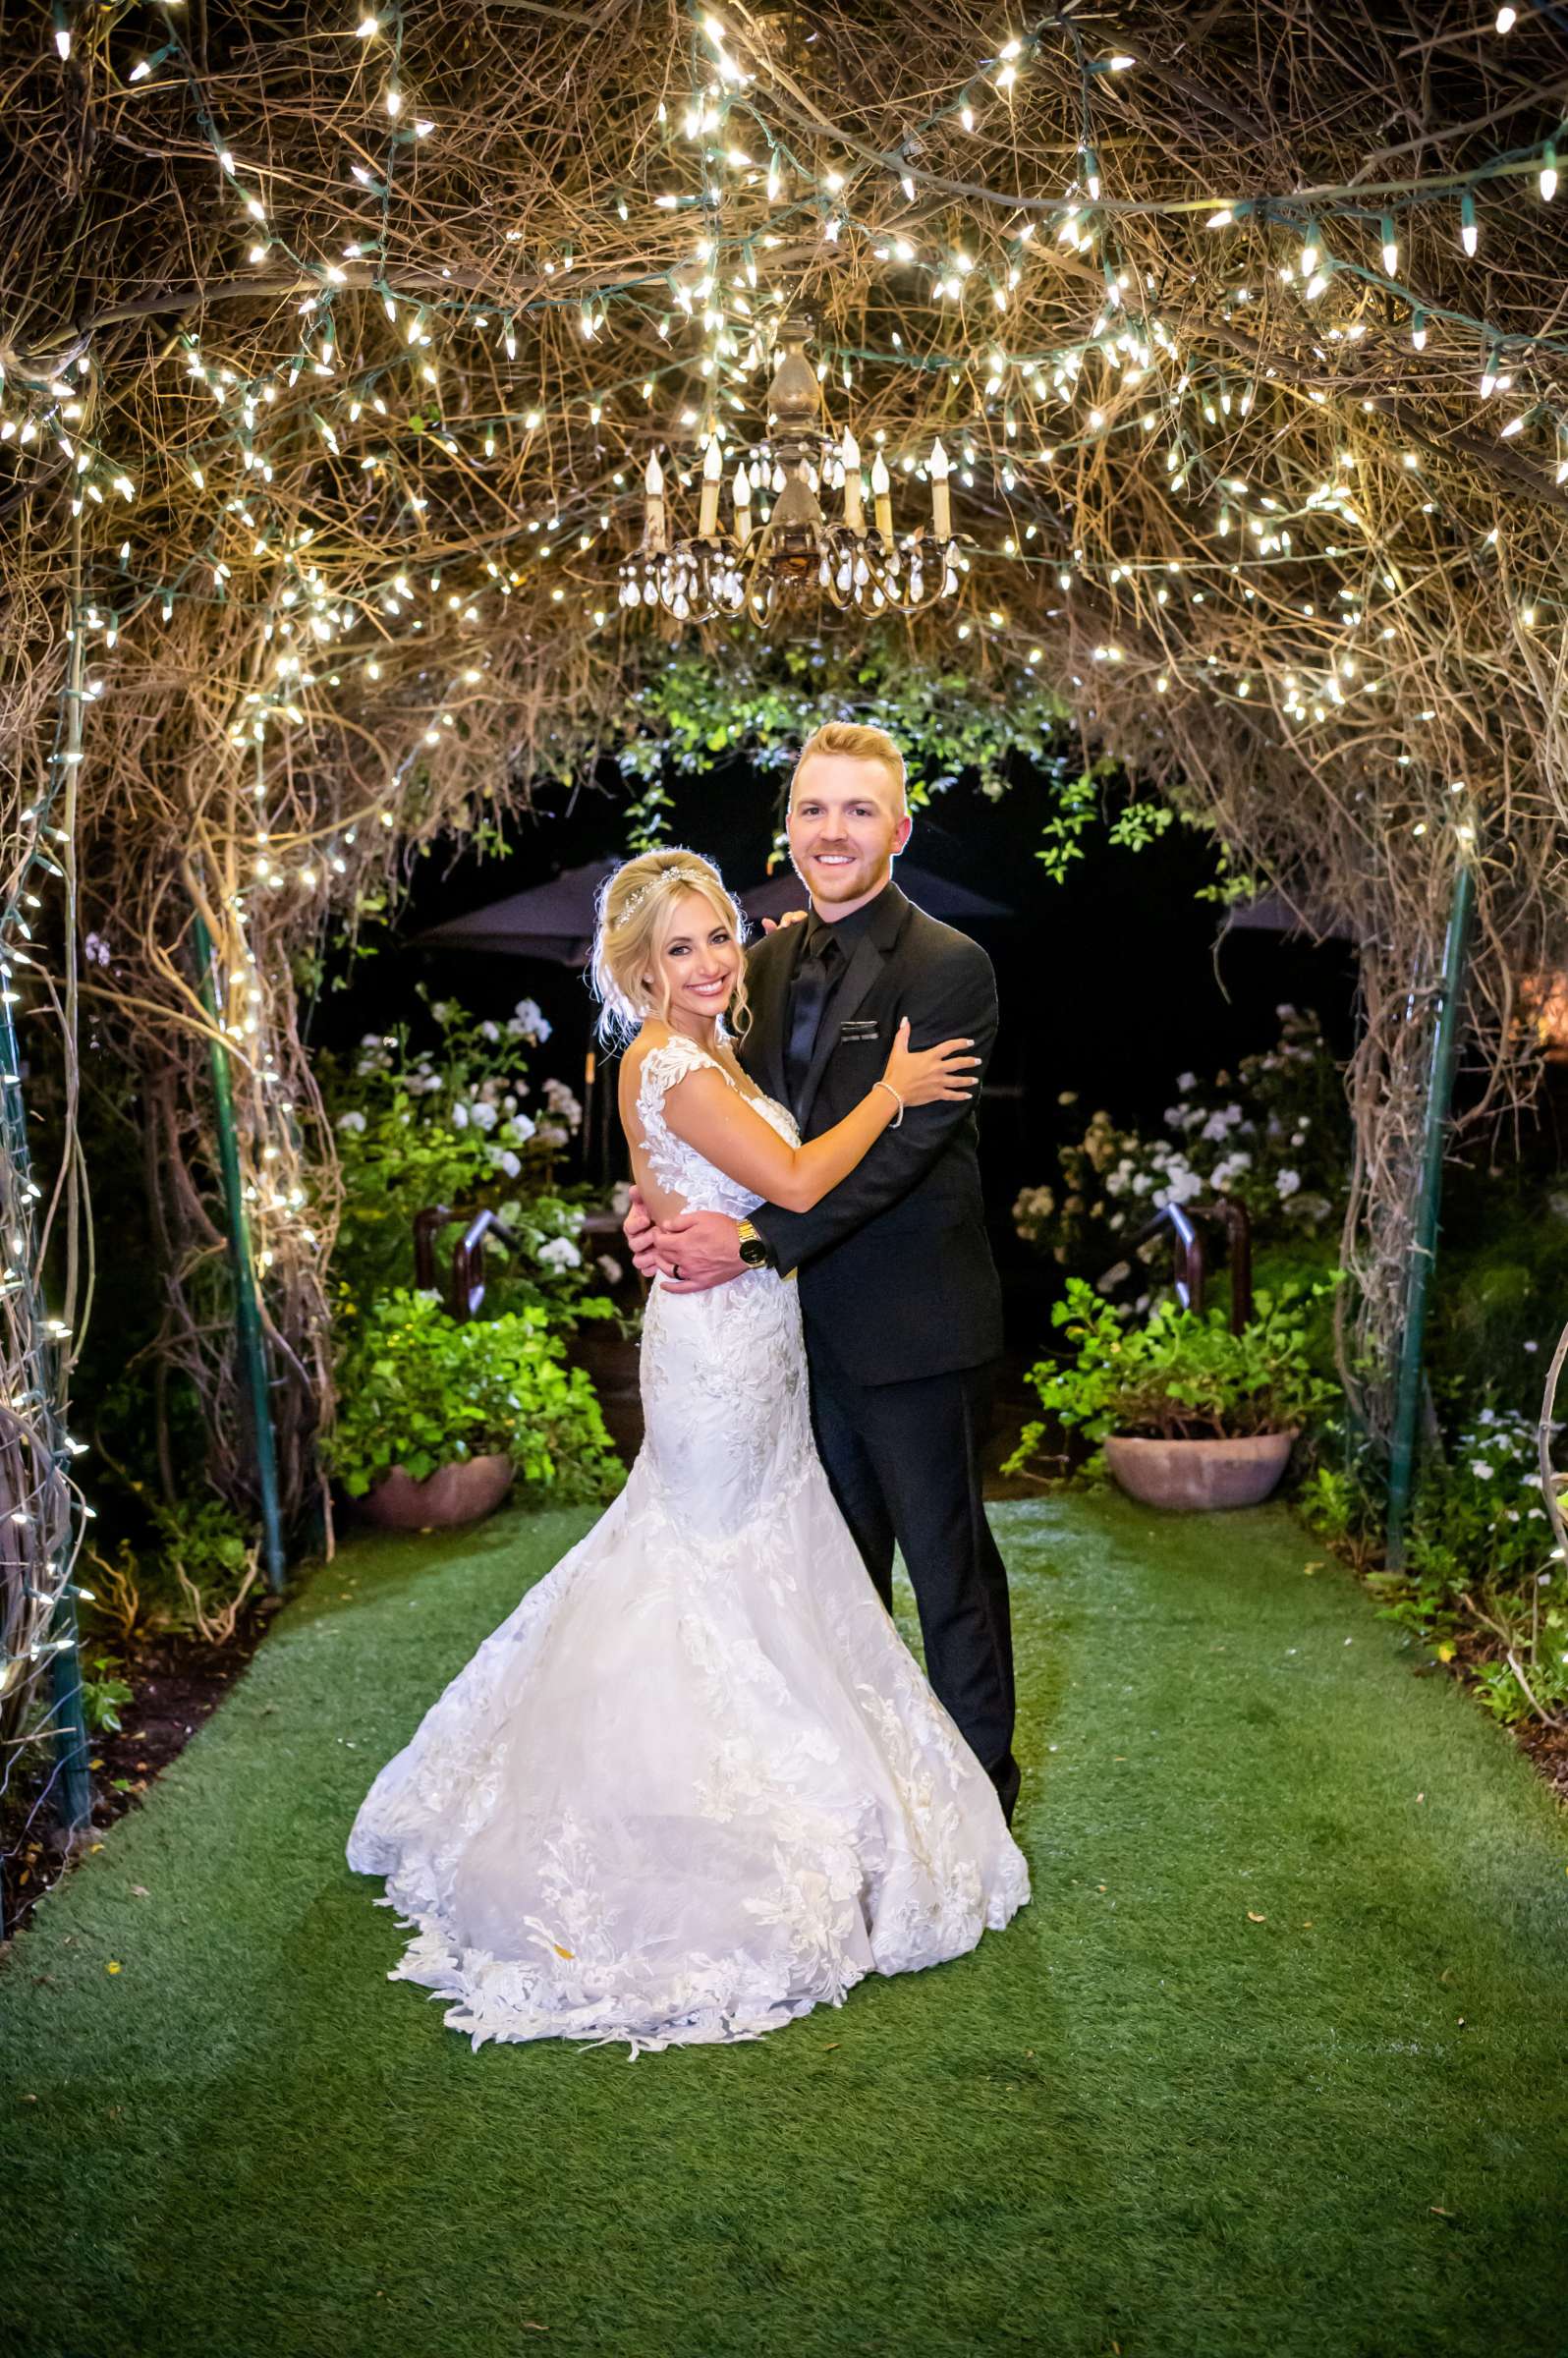 Green Gables Wedding Estate Wedding, Tiffanie and Daniel Wedding Photo #1 by True Photography